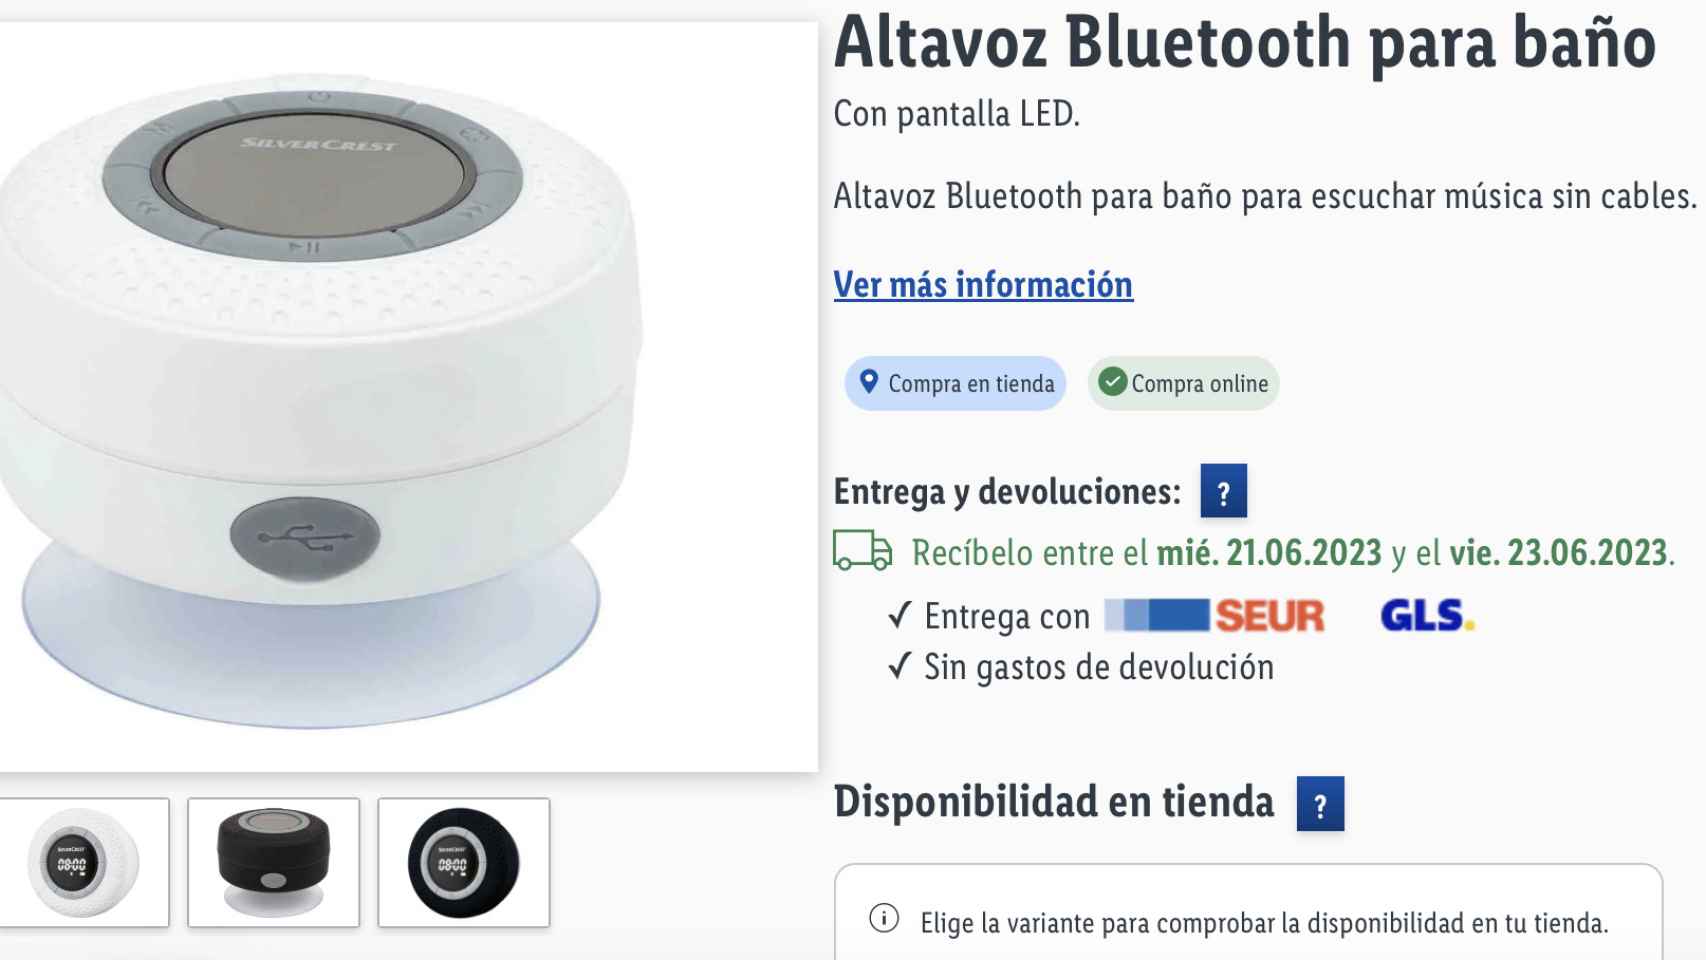 Altavoz Bluetooth.